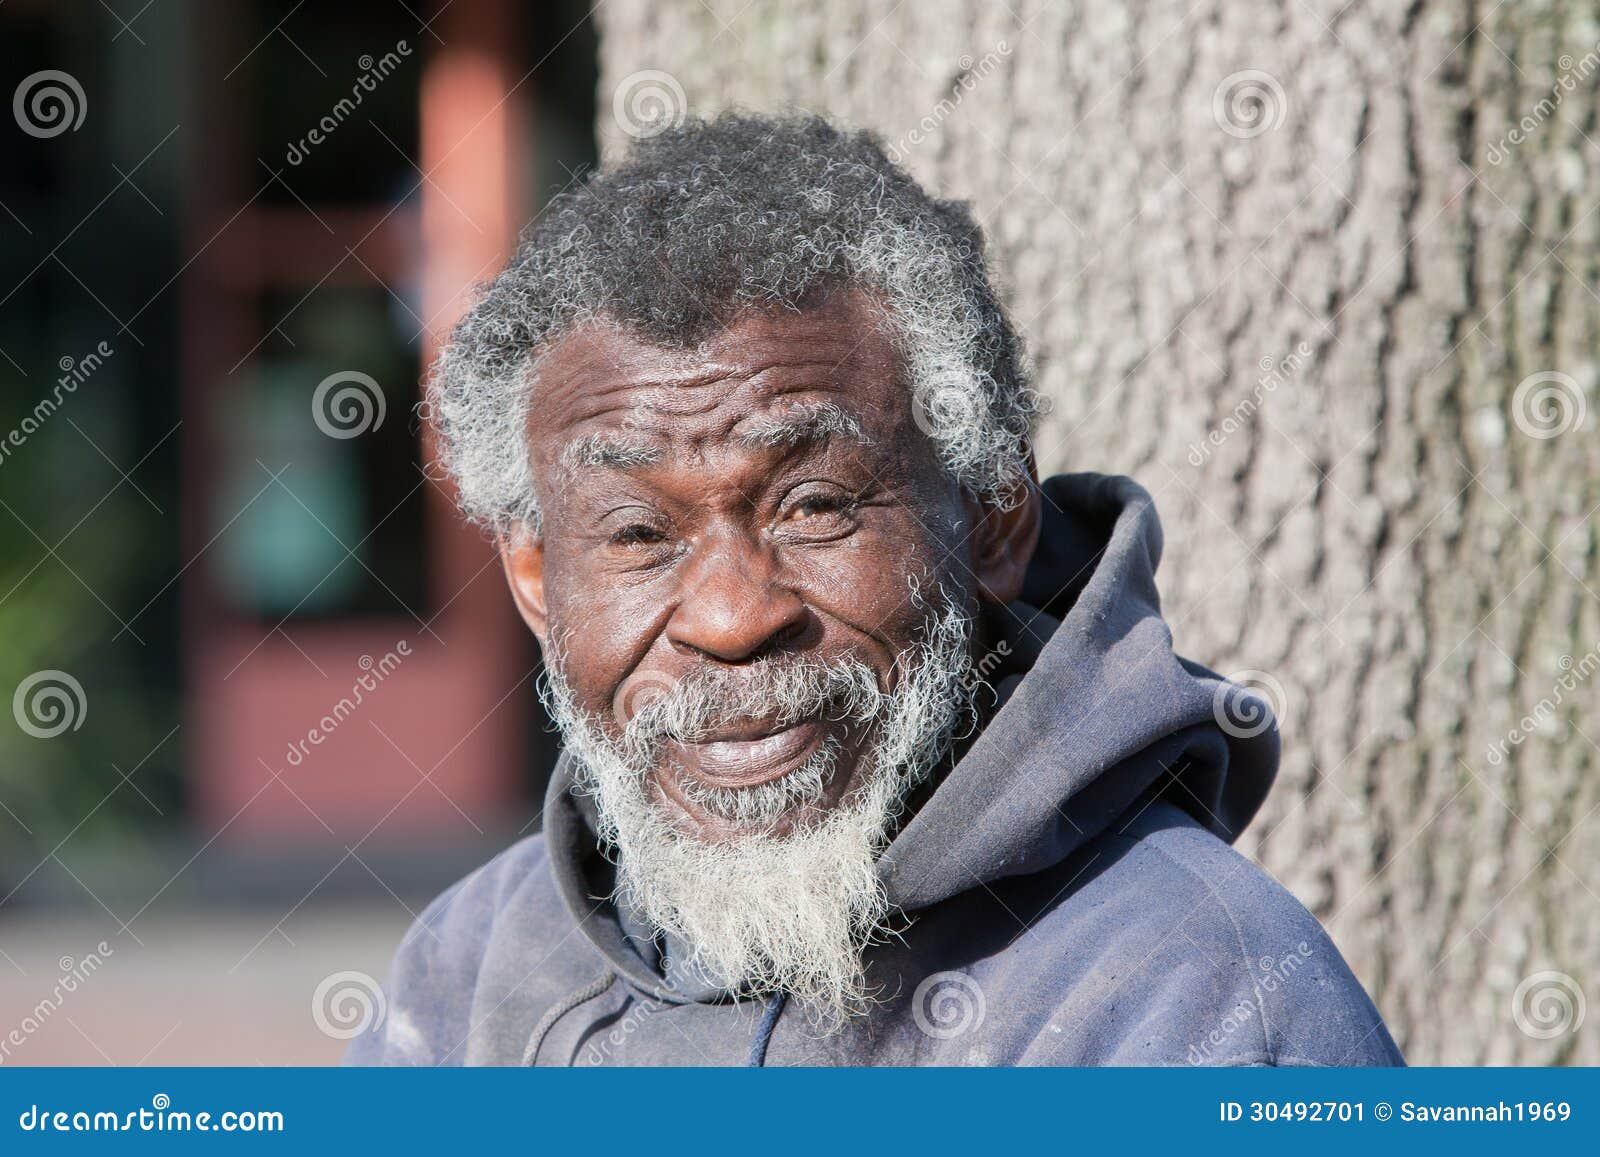 Smiling Old Black Man